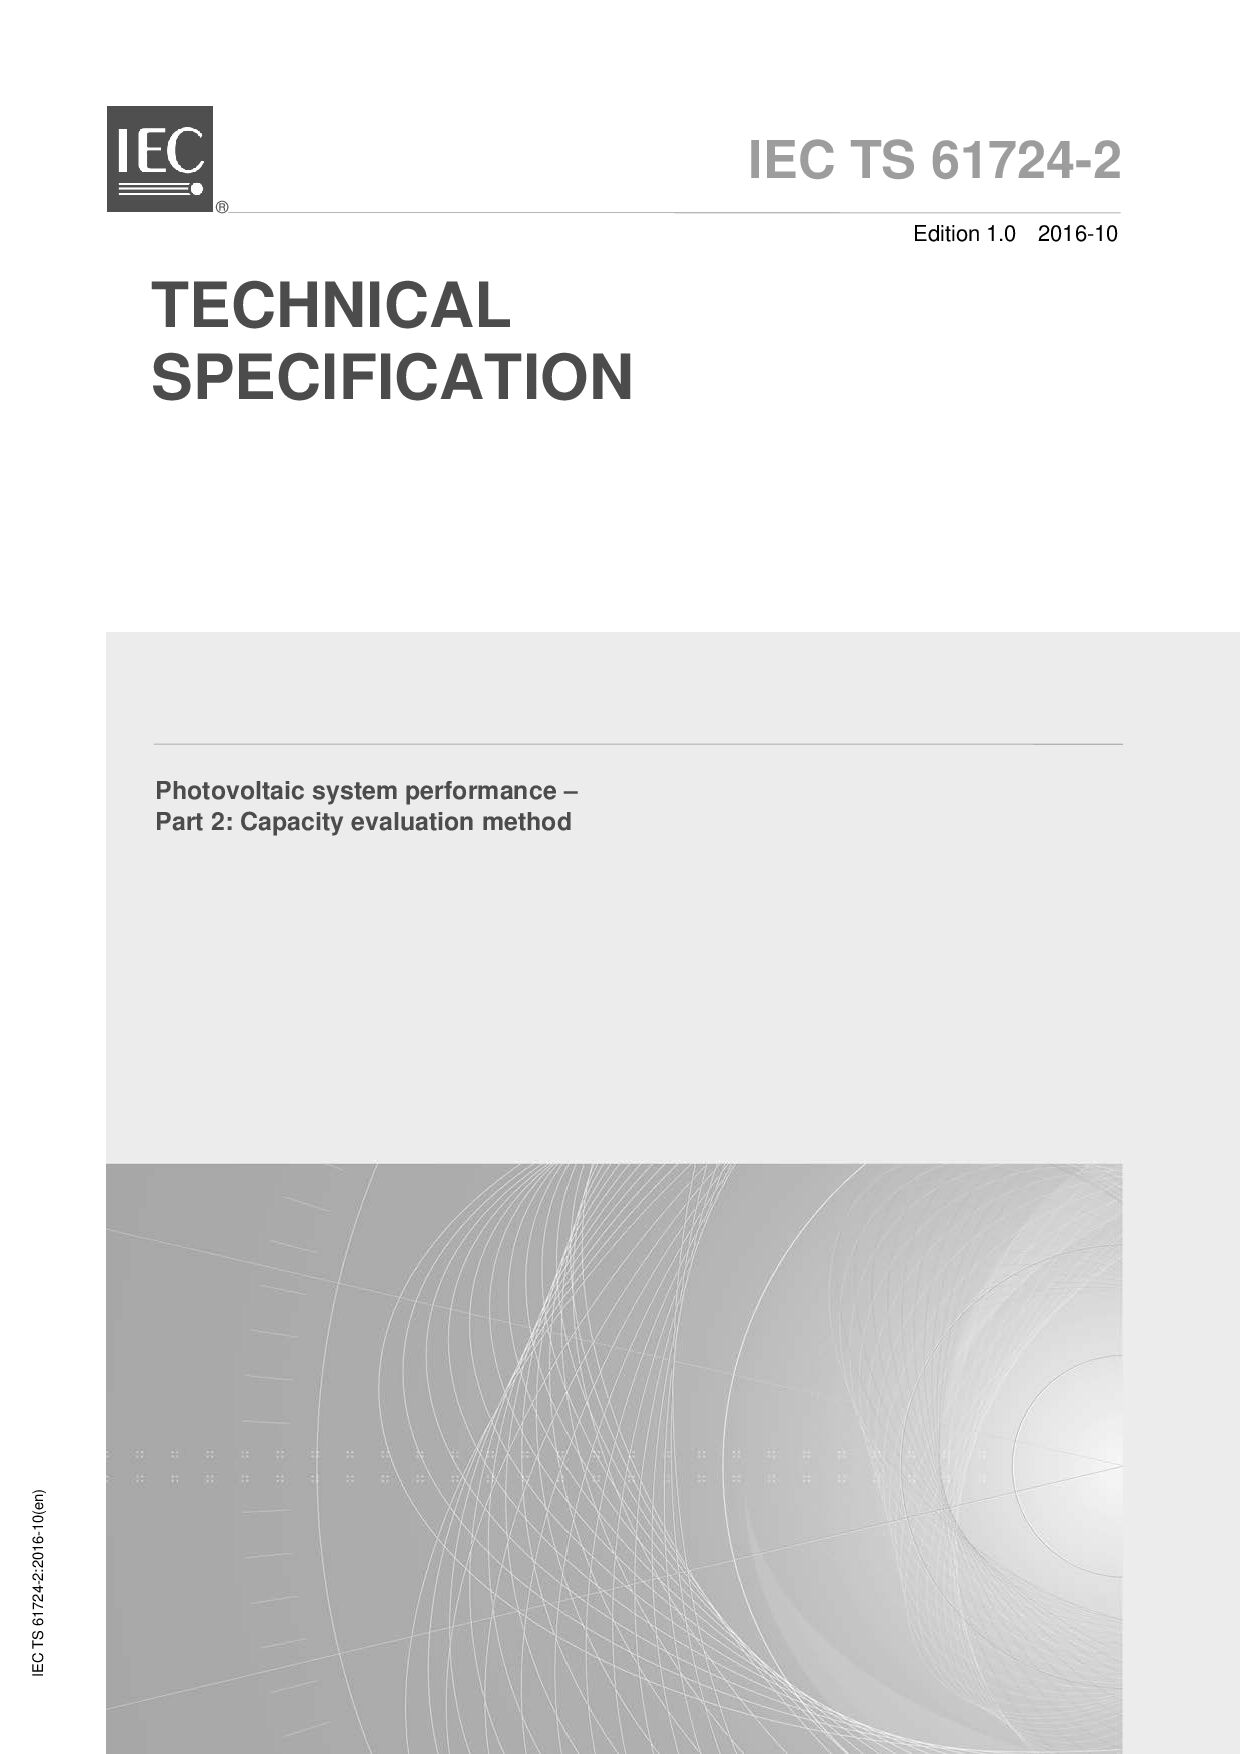 IEC TS 61724-2:2016